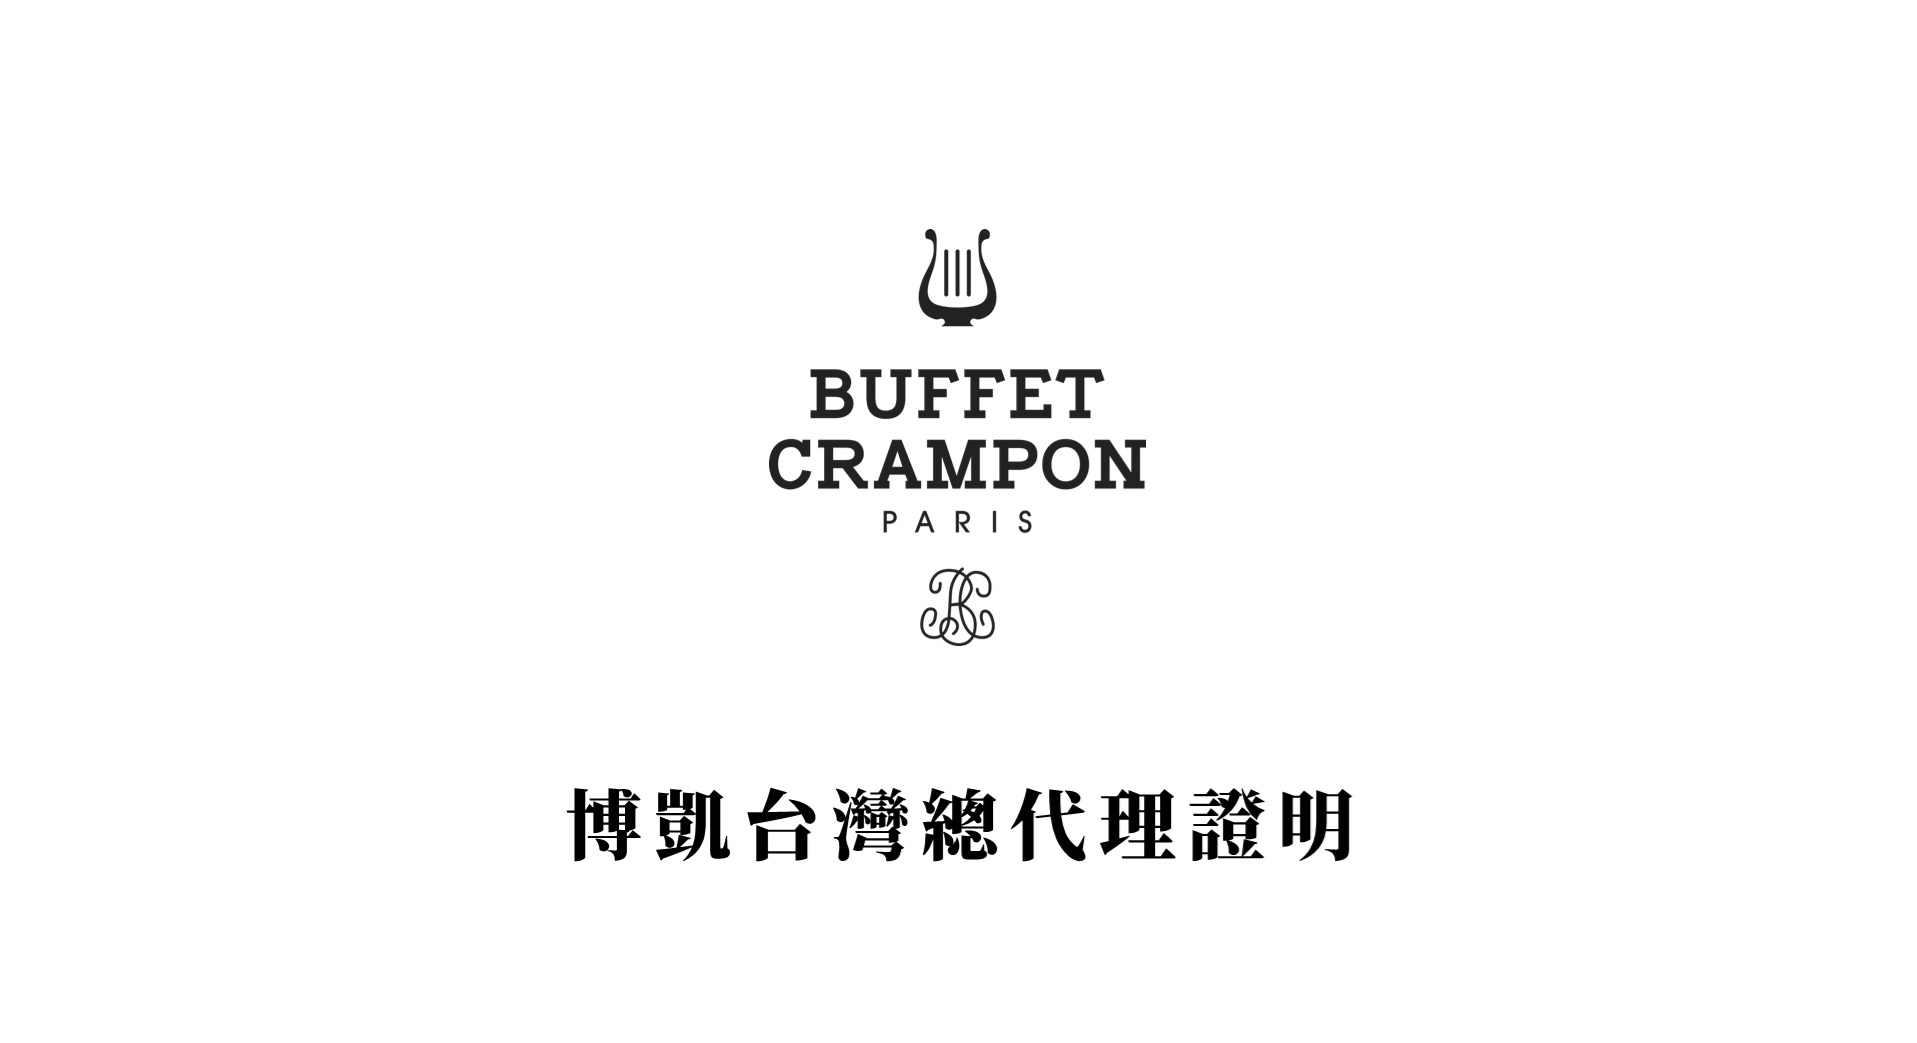 【博凱音樂用品股份有限公司 Buffet Crampon台灣總代理證明】